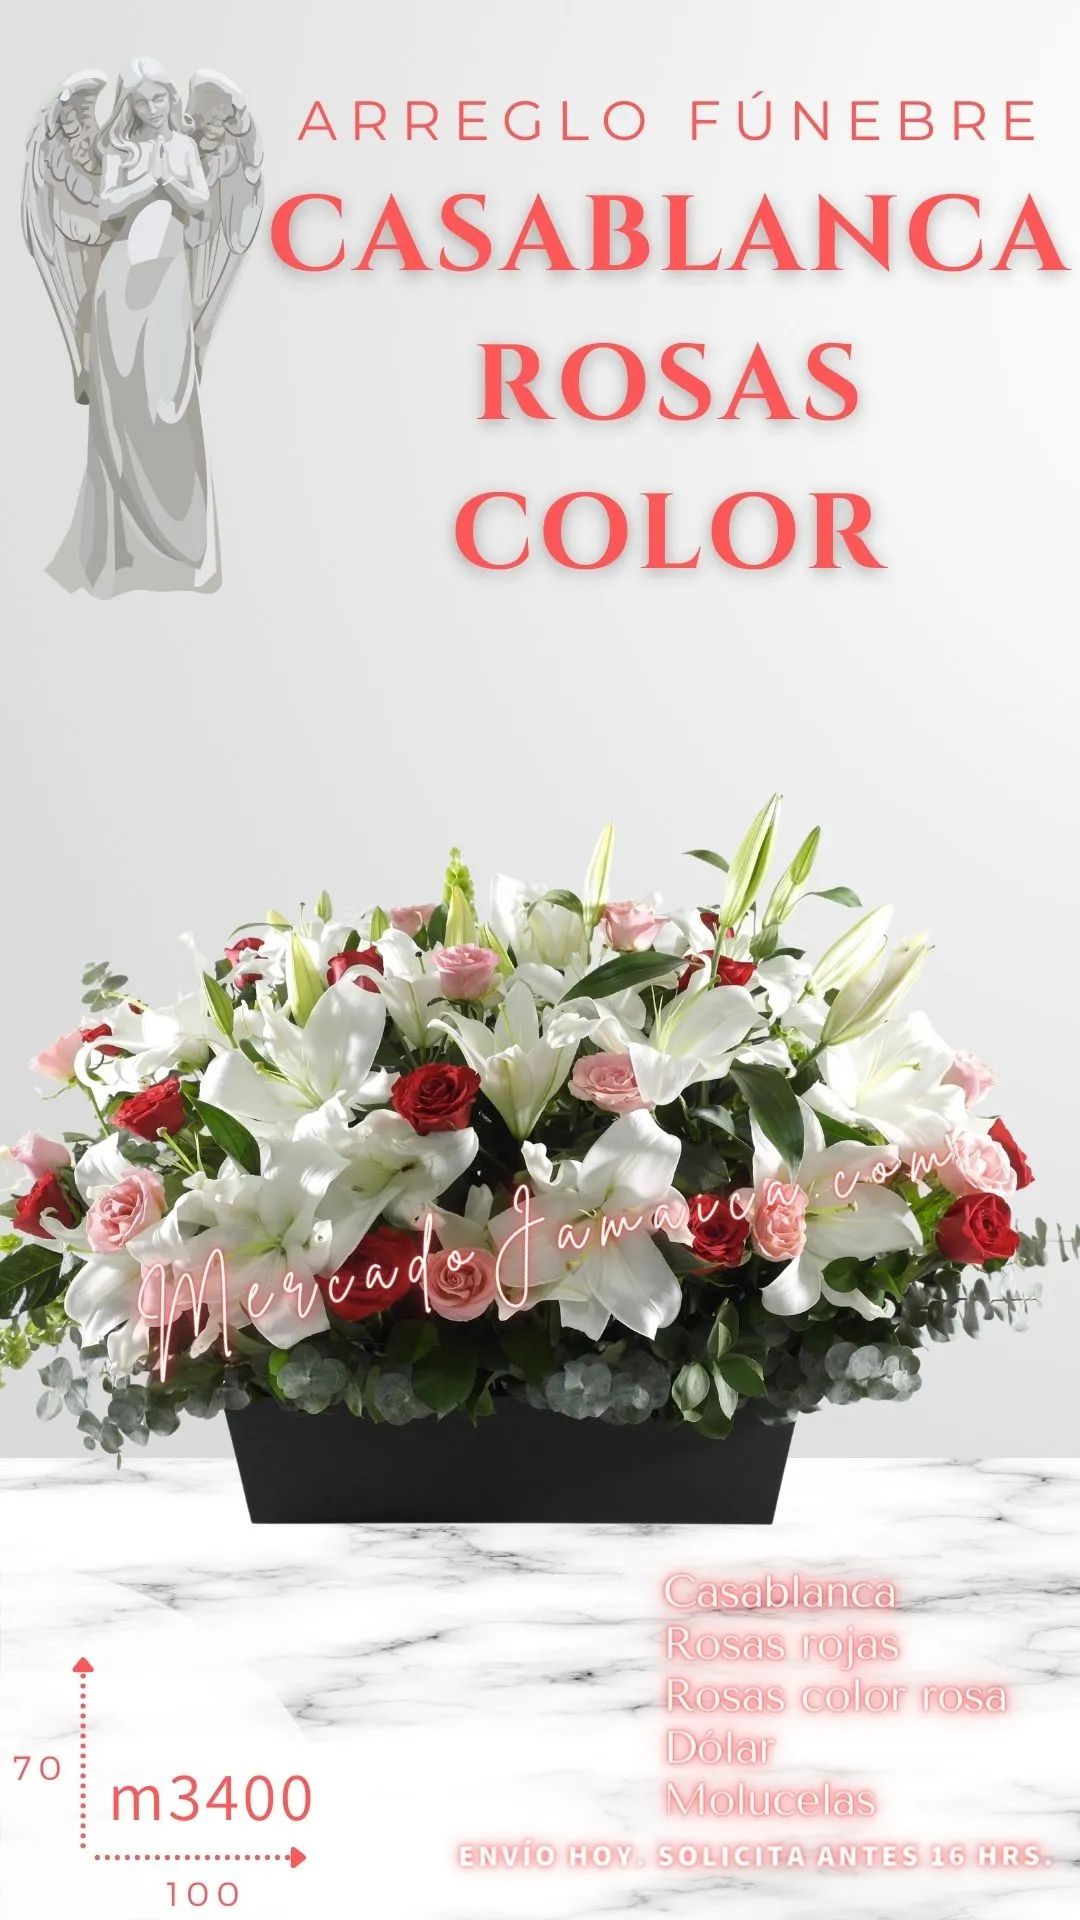 Arreglo Fúnebre CasaBlanca con Rosas Color